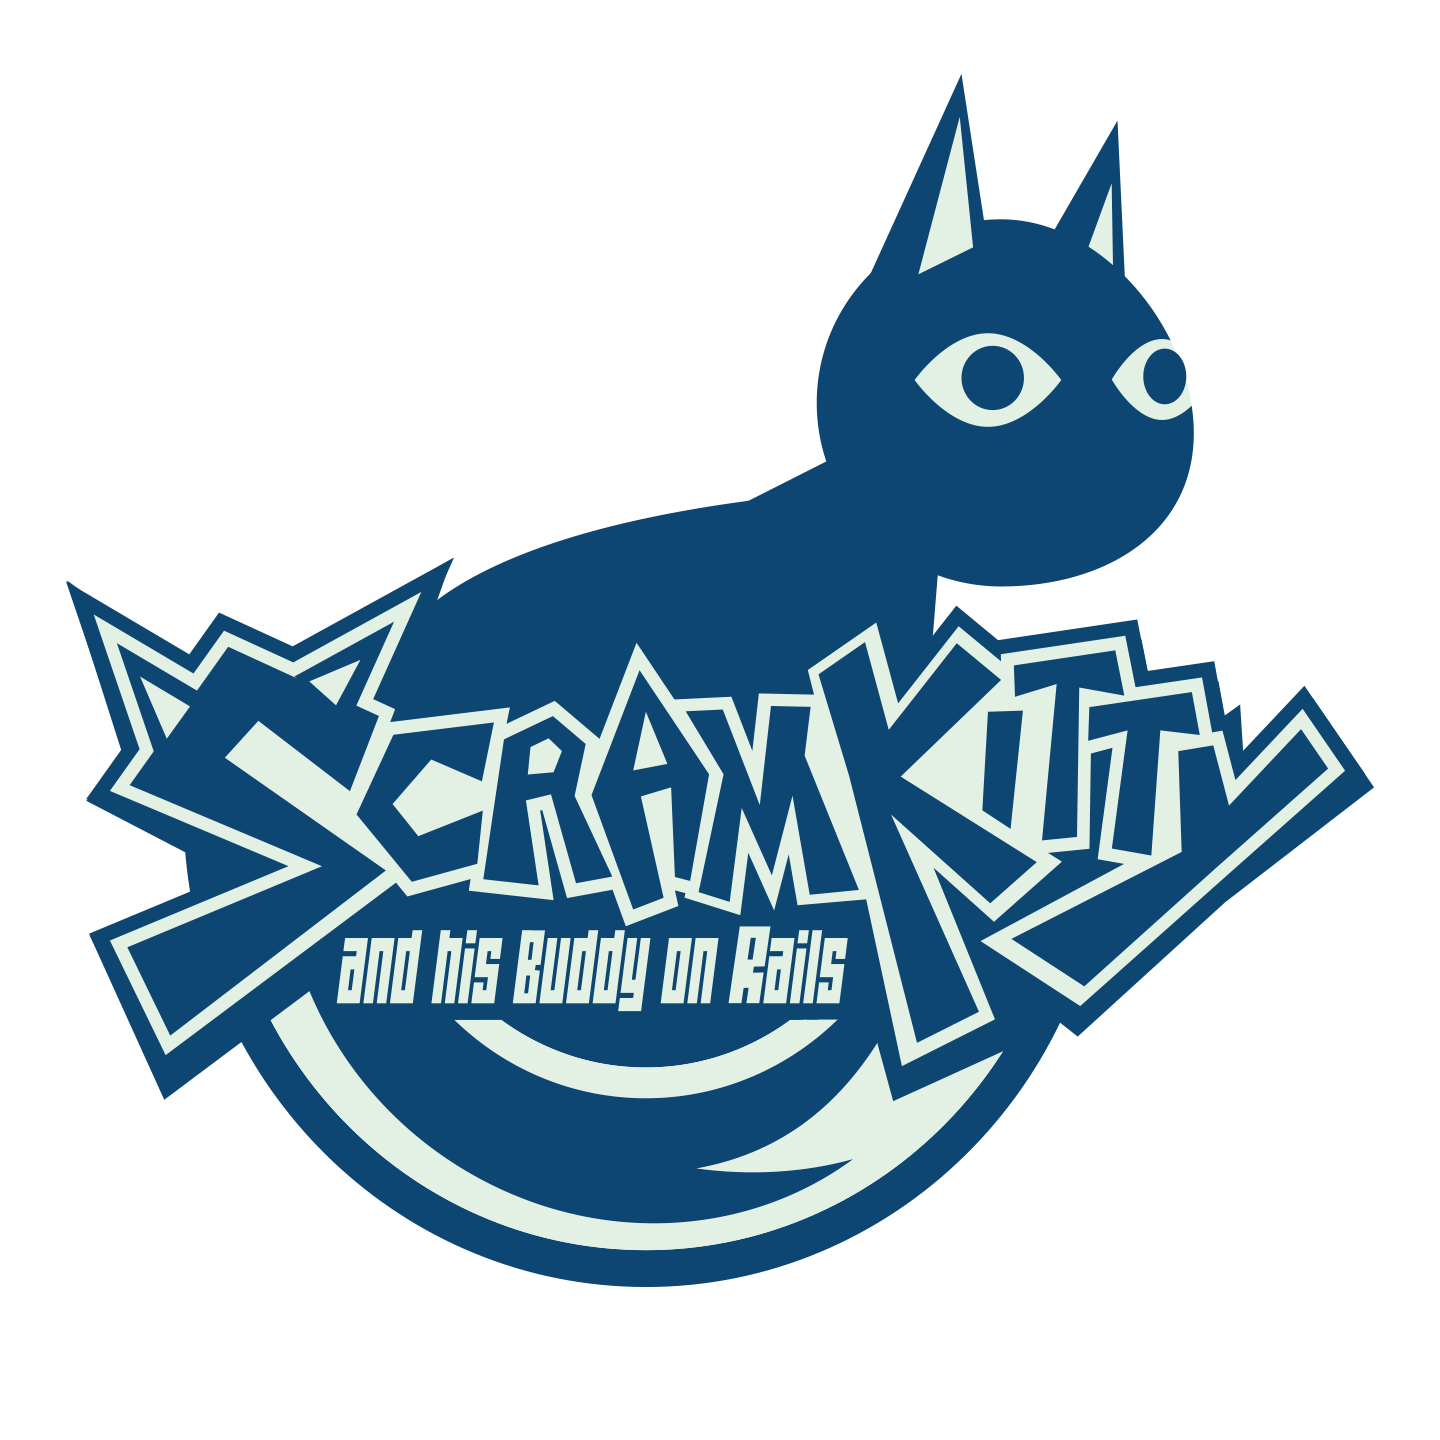 scram_kitty_logo